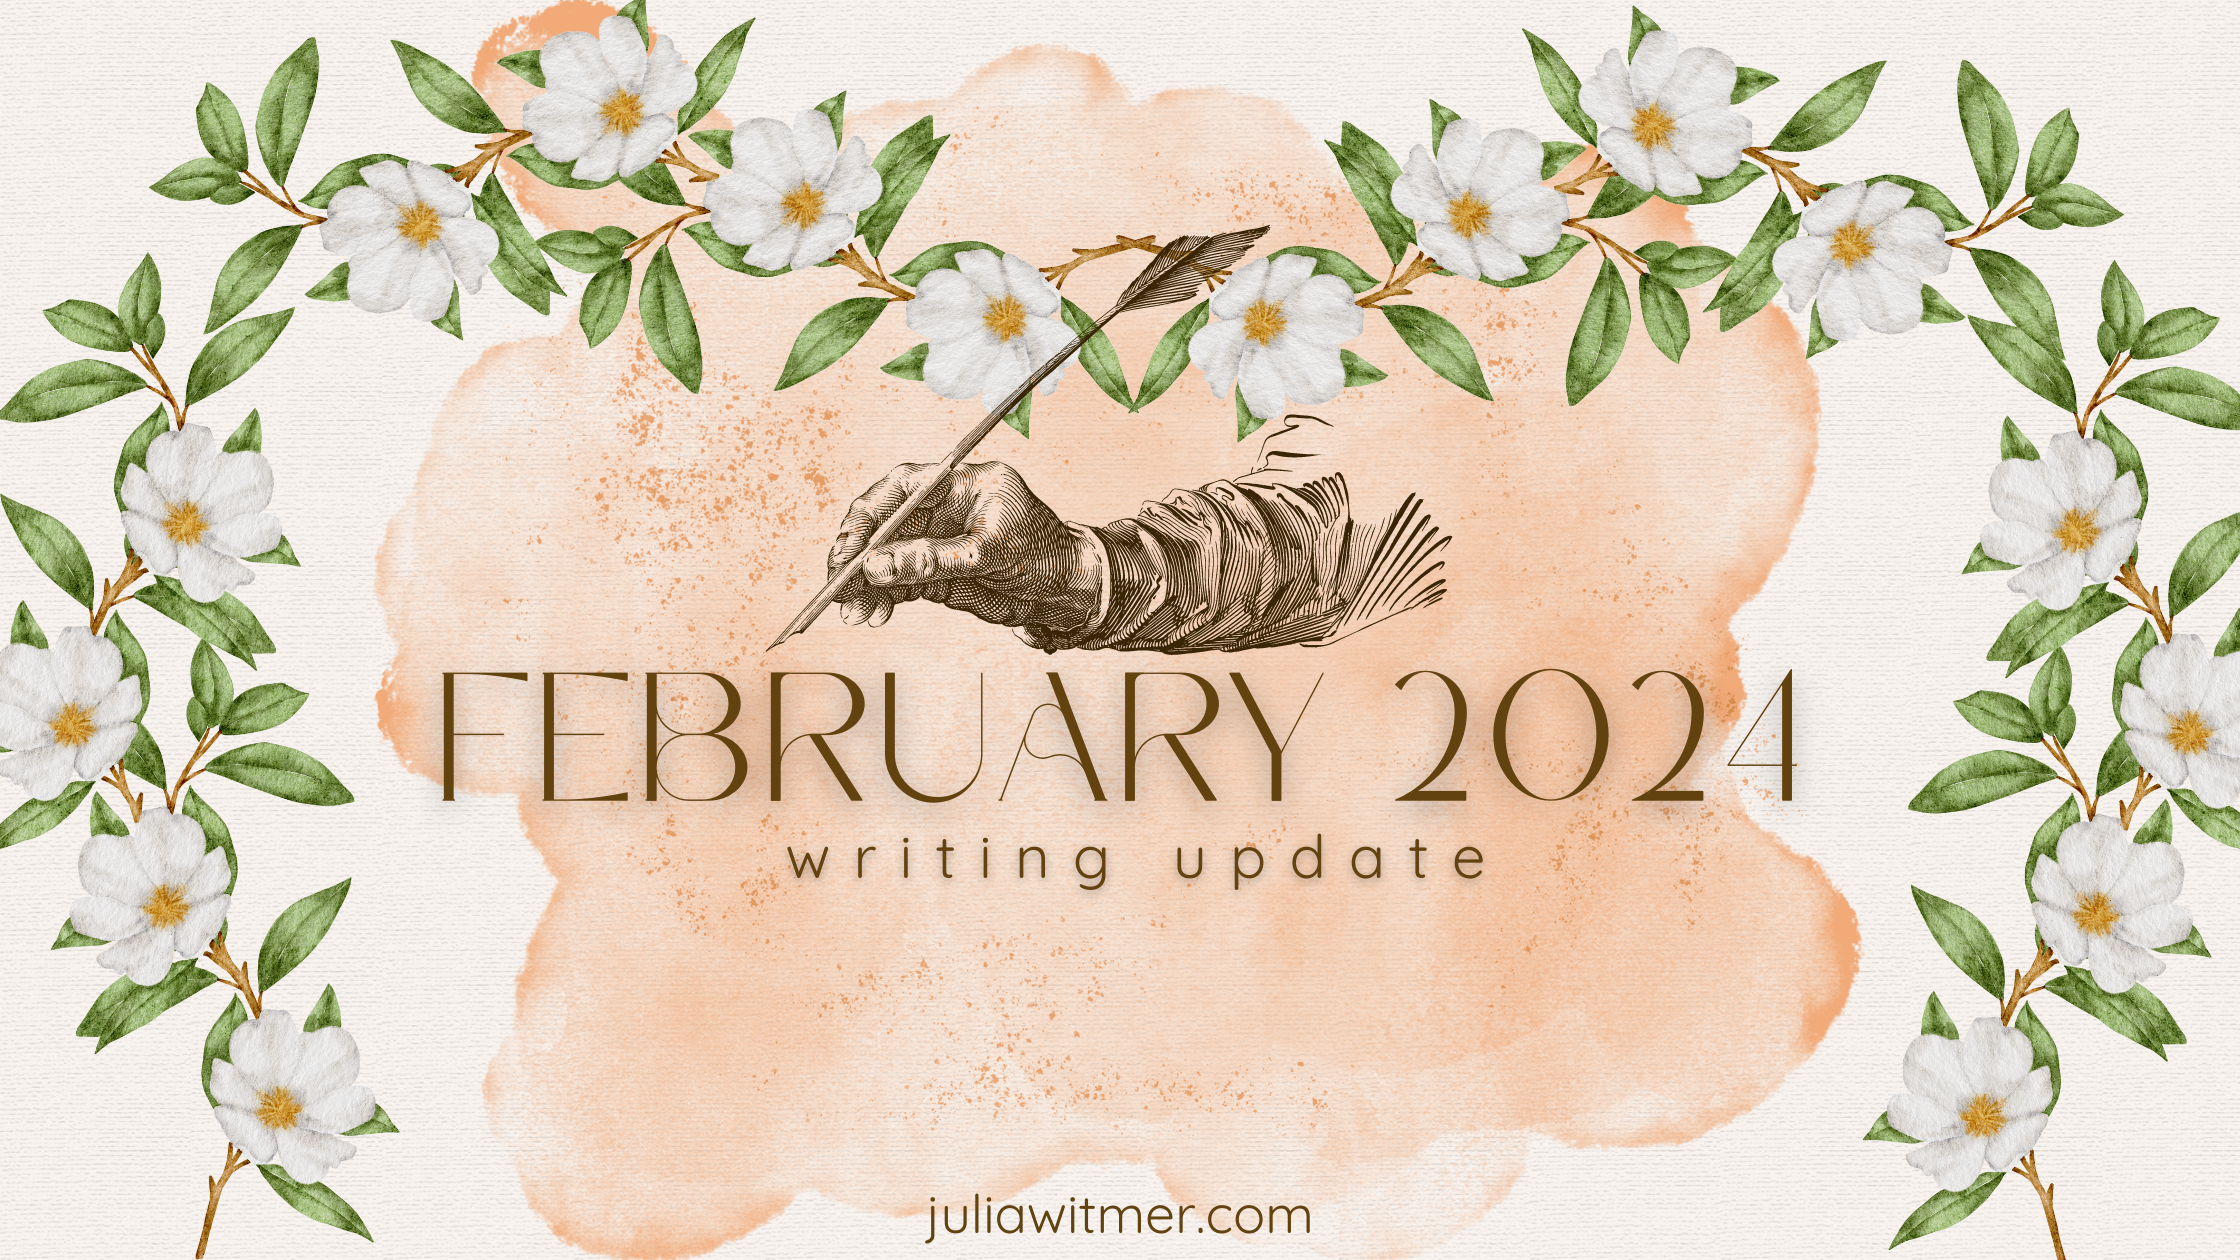 February 2024: Writing Update